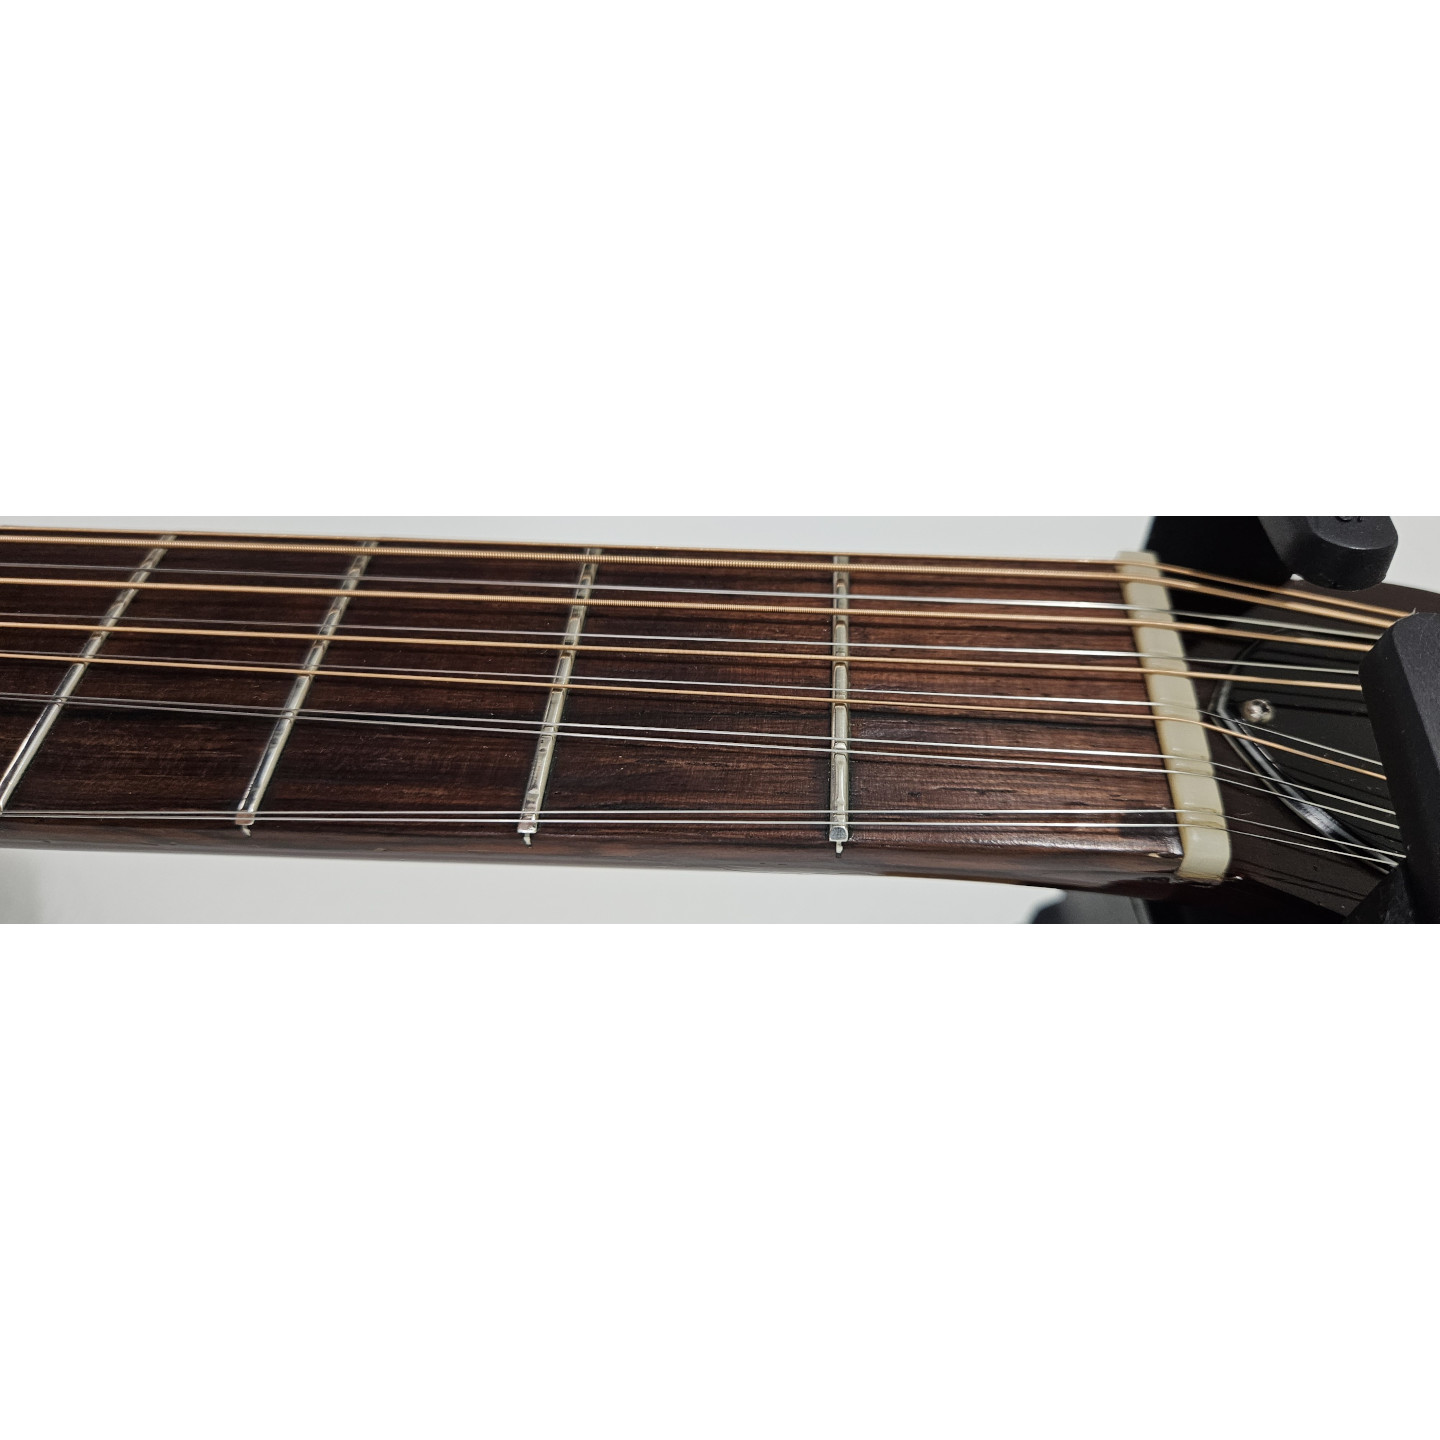 1971 Guild F-112-NT 12-String Natural Vintage F112NT Acoustic Guitar